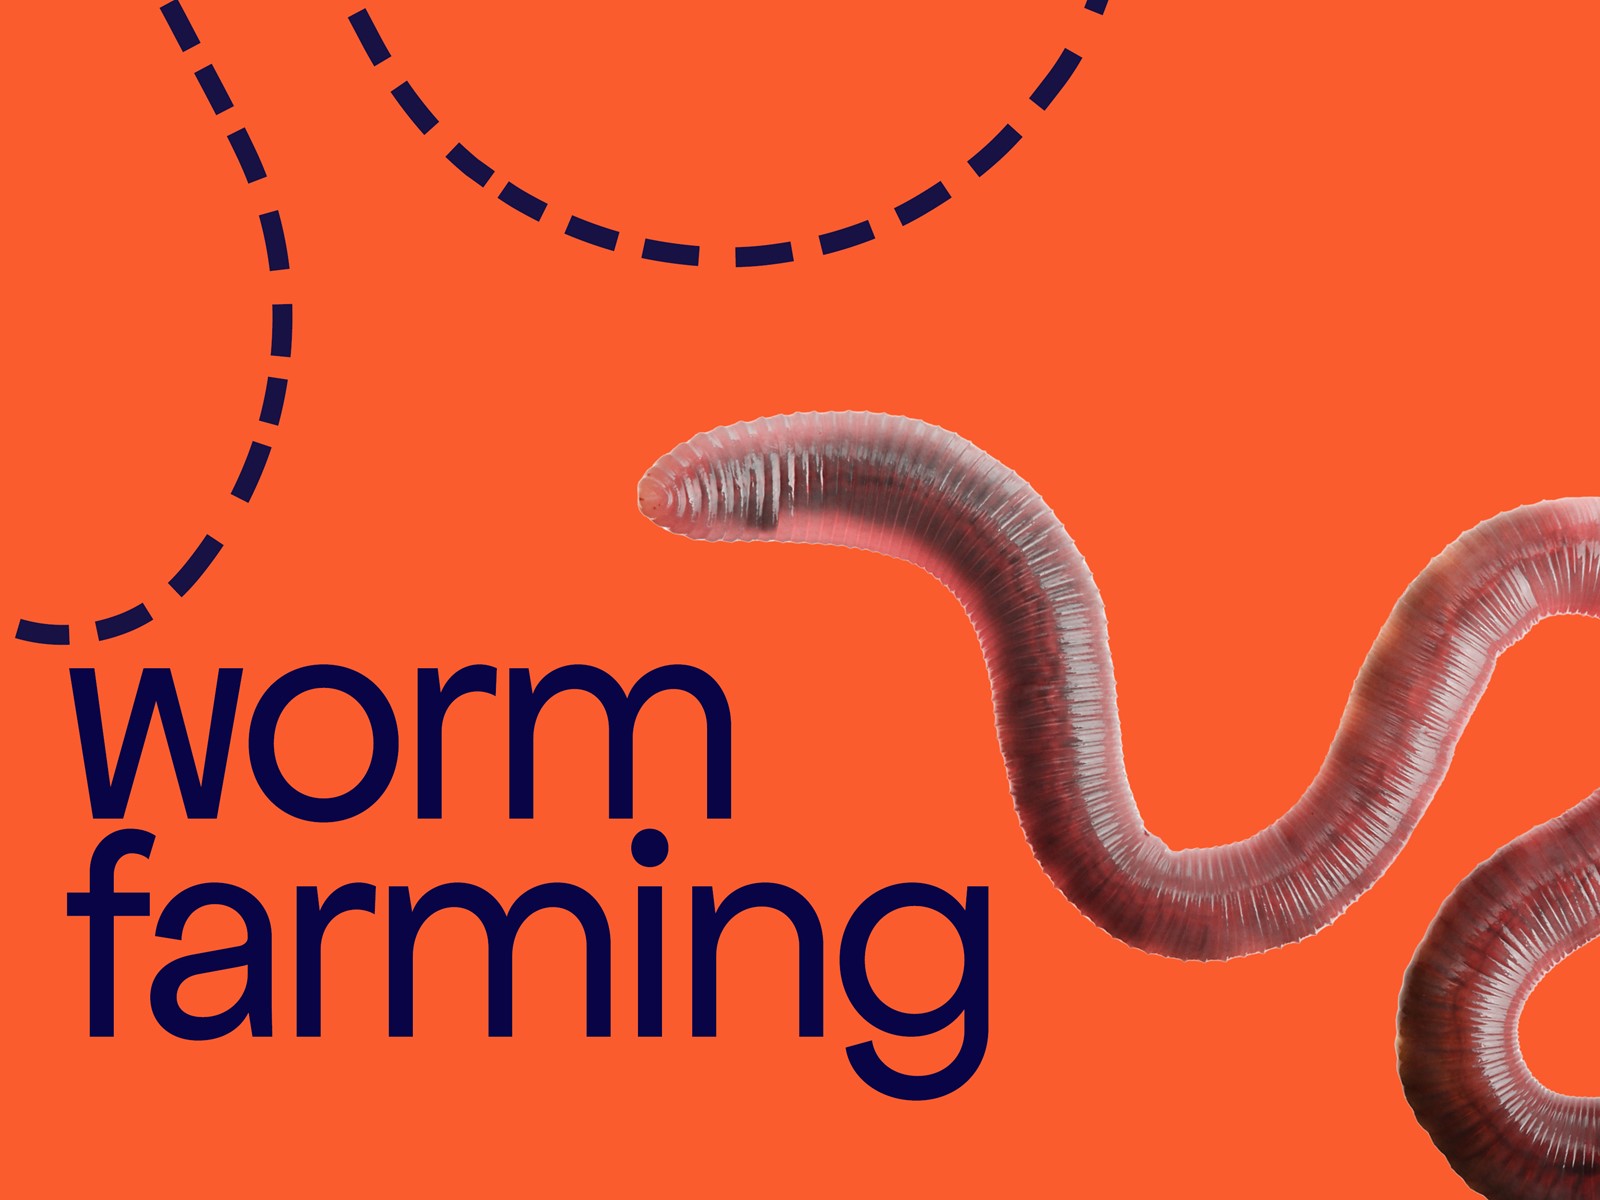 Worm farming. 